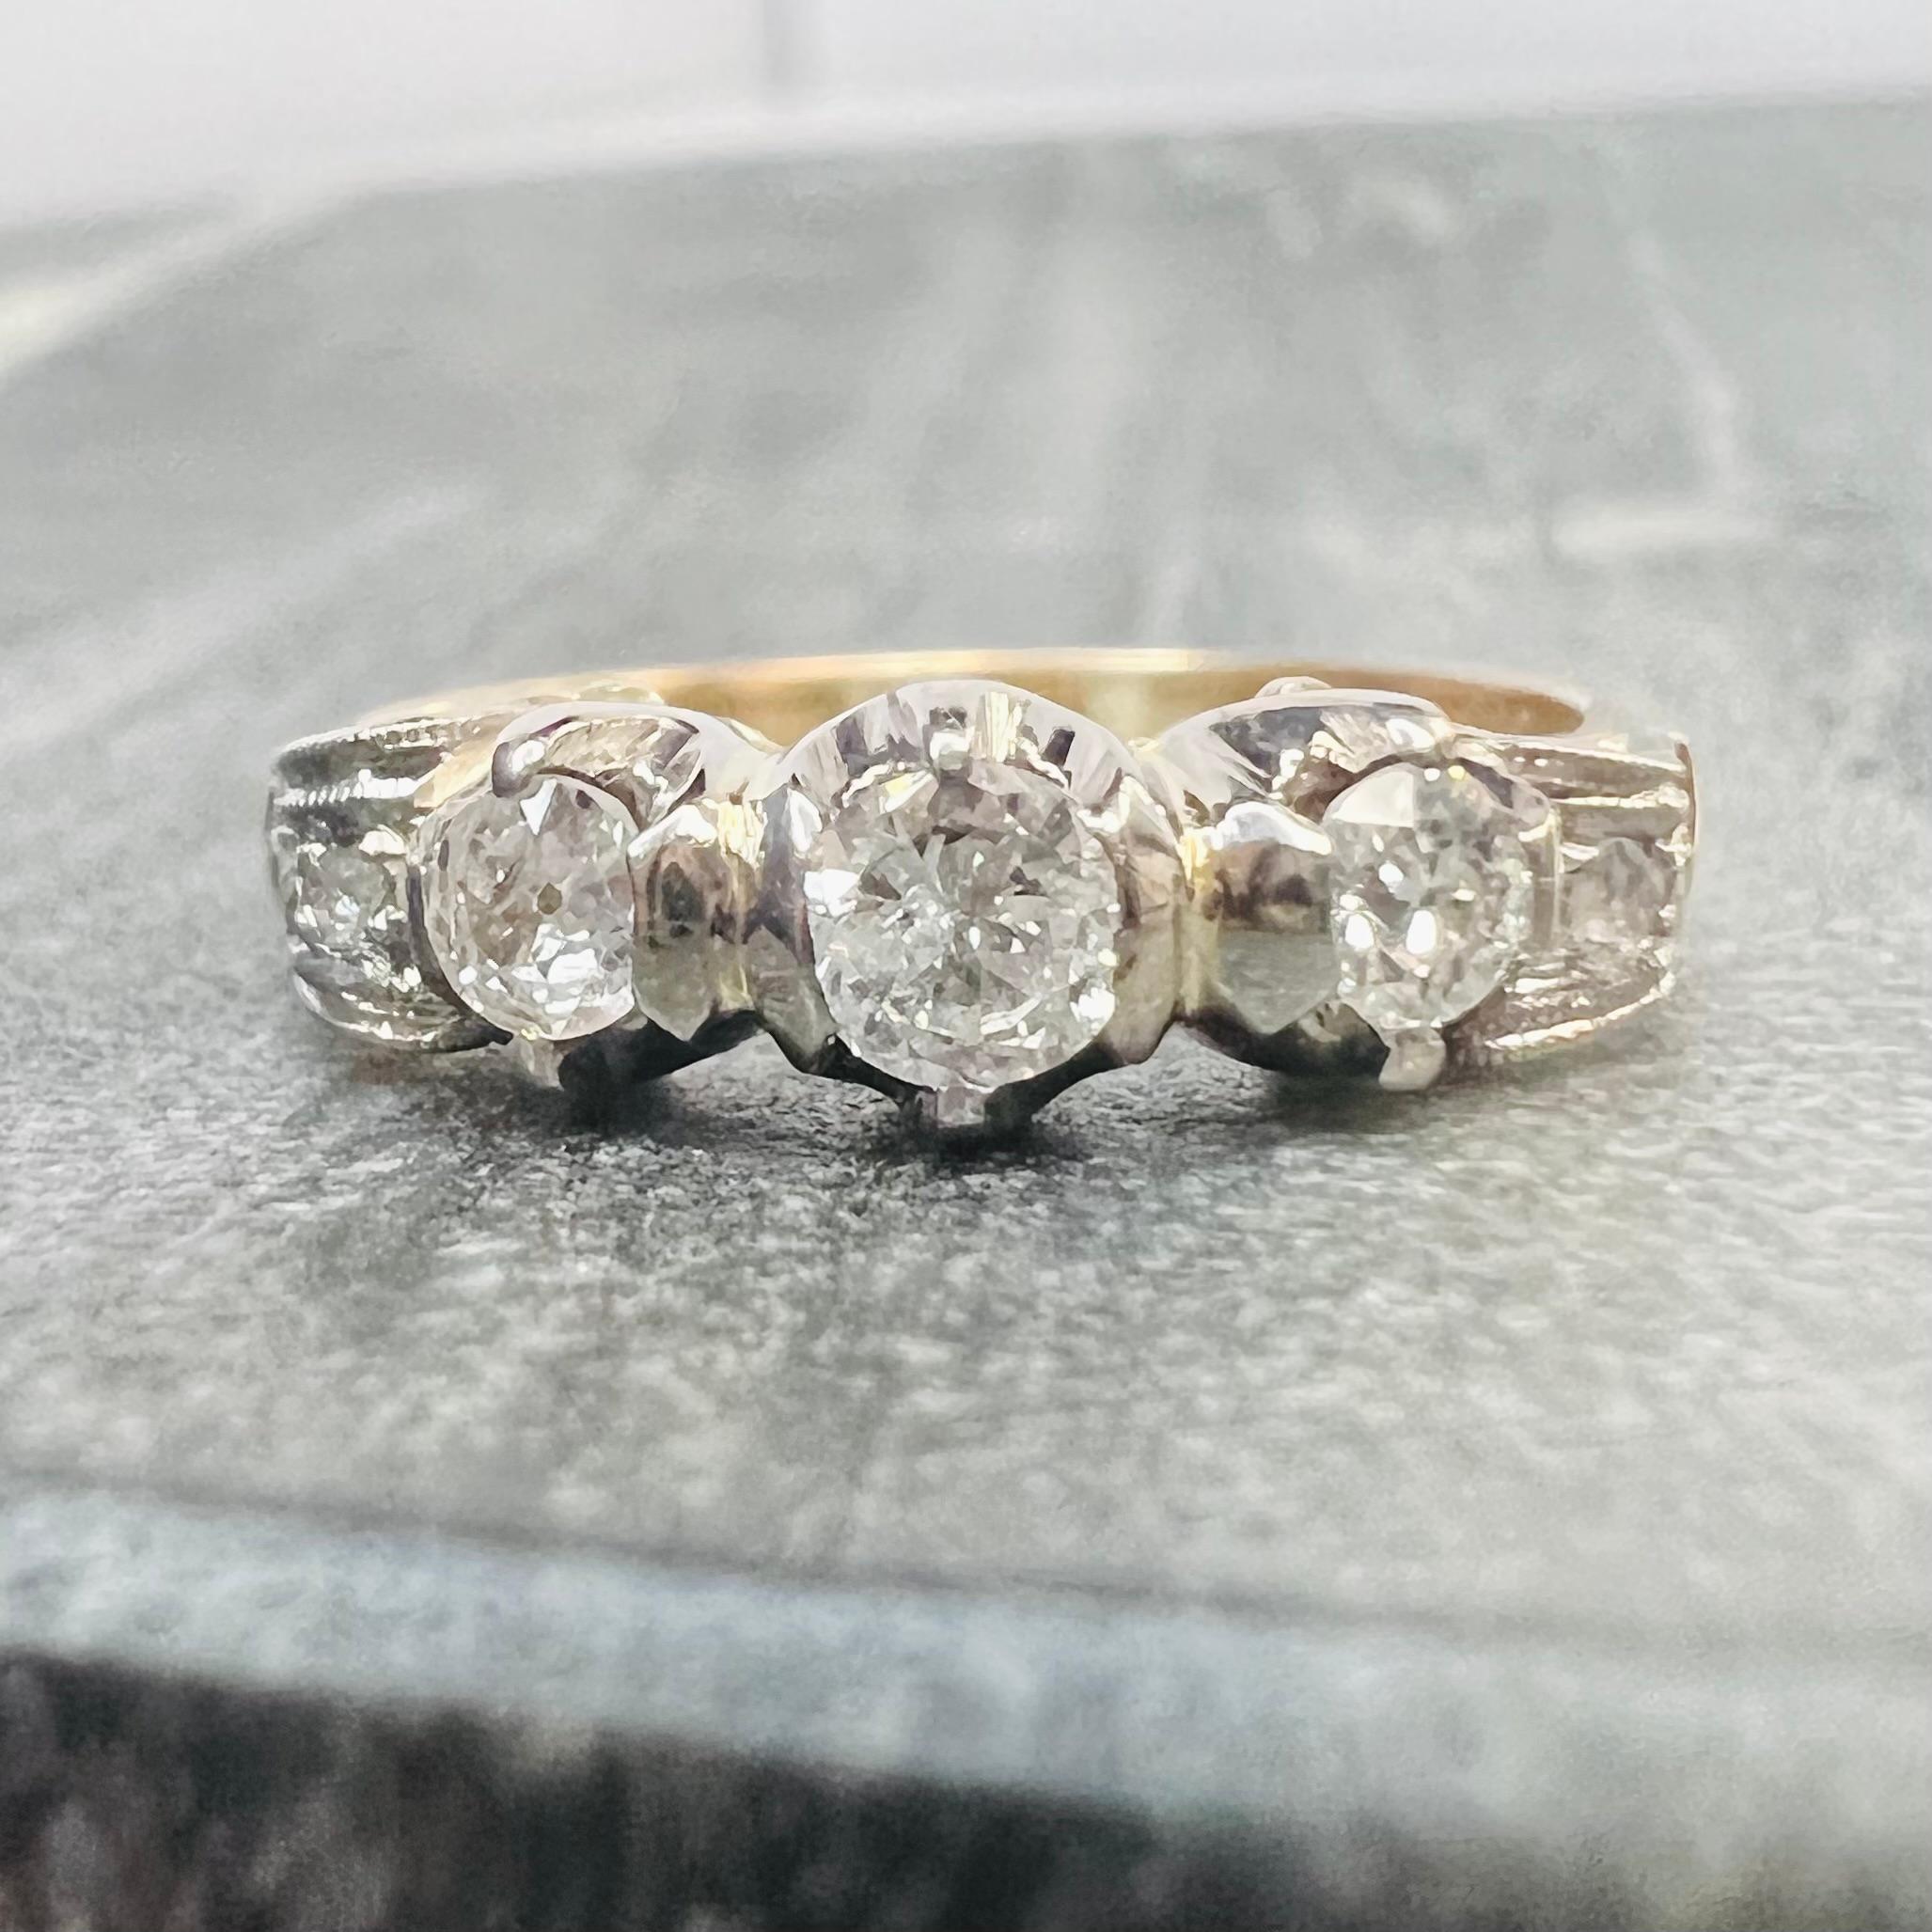 Vorstellen einer,

Wunderschöner edwardianischer Vintage-Ring mit 3 Diamanten in Prong-Fassung.

Der Ring ist mit einem Design mit Diamanten auf Platin graviert.

Das Ringband ist aus 18K Gelbgold gefertigt 

Die Diamanten sind natürlich und werden